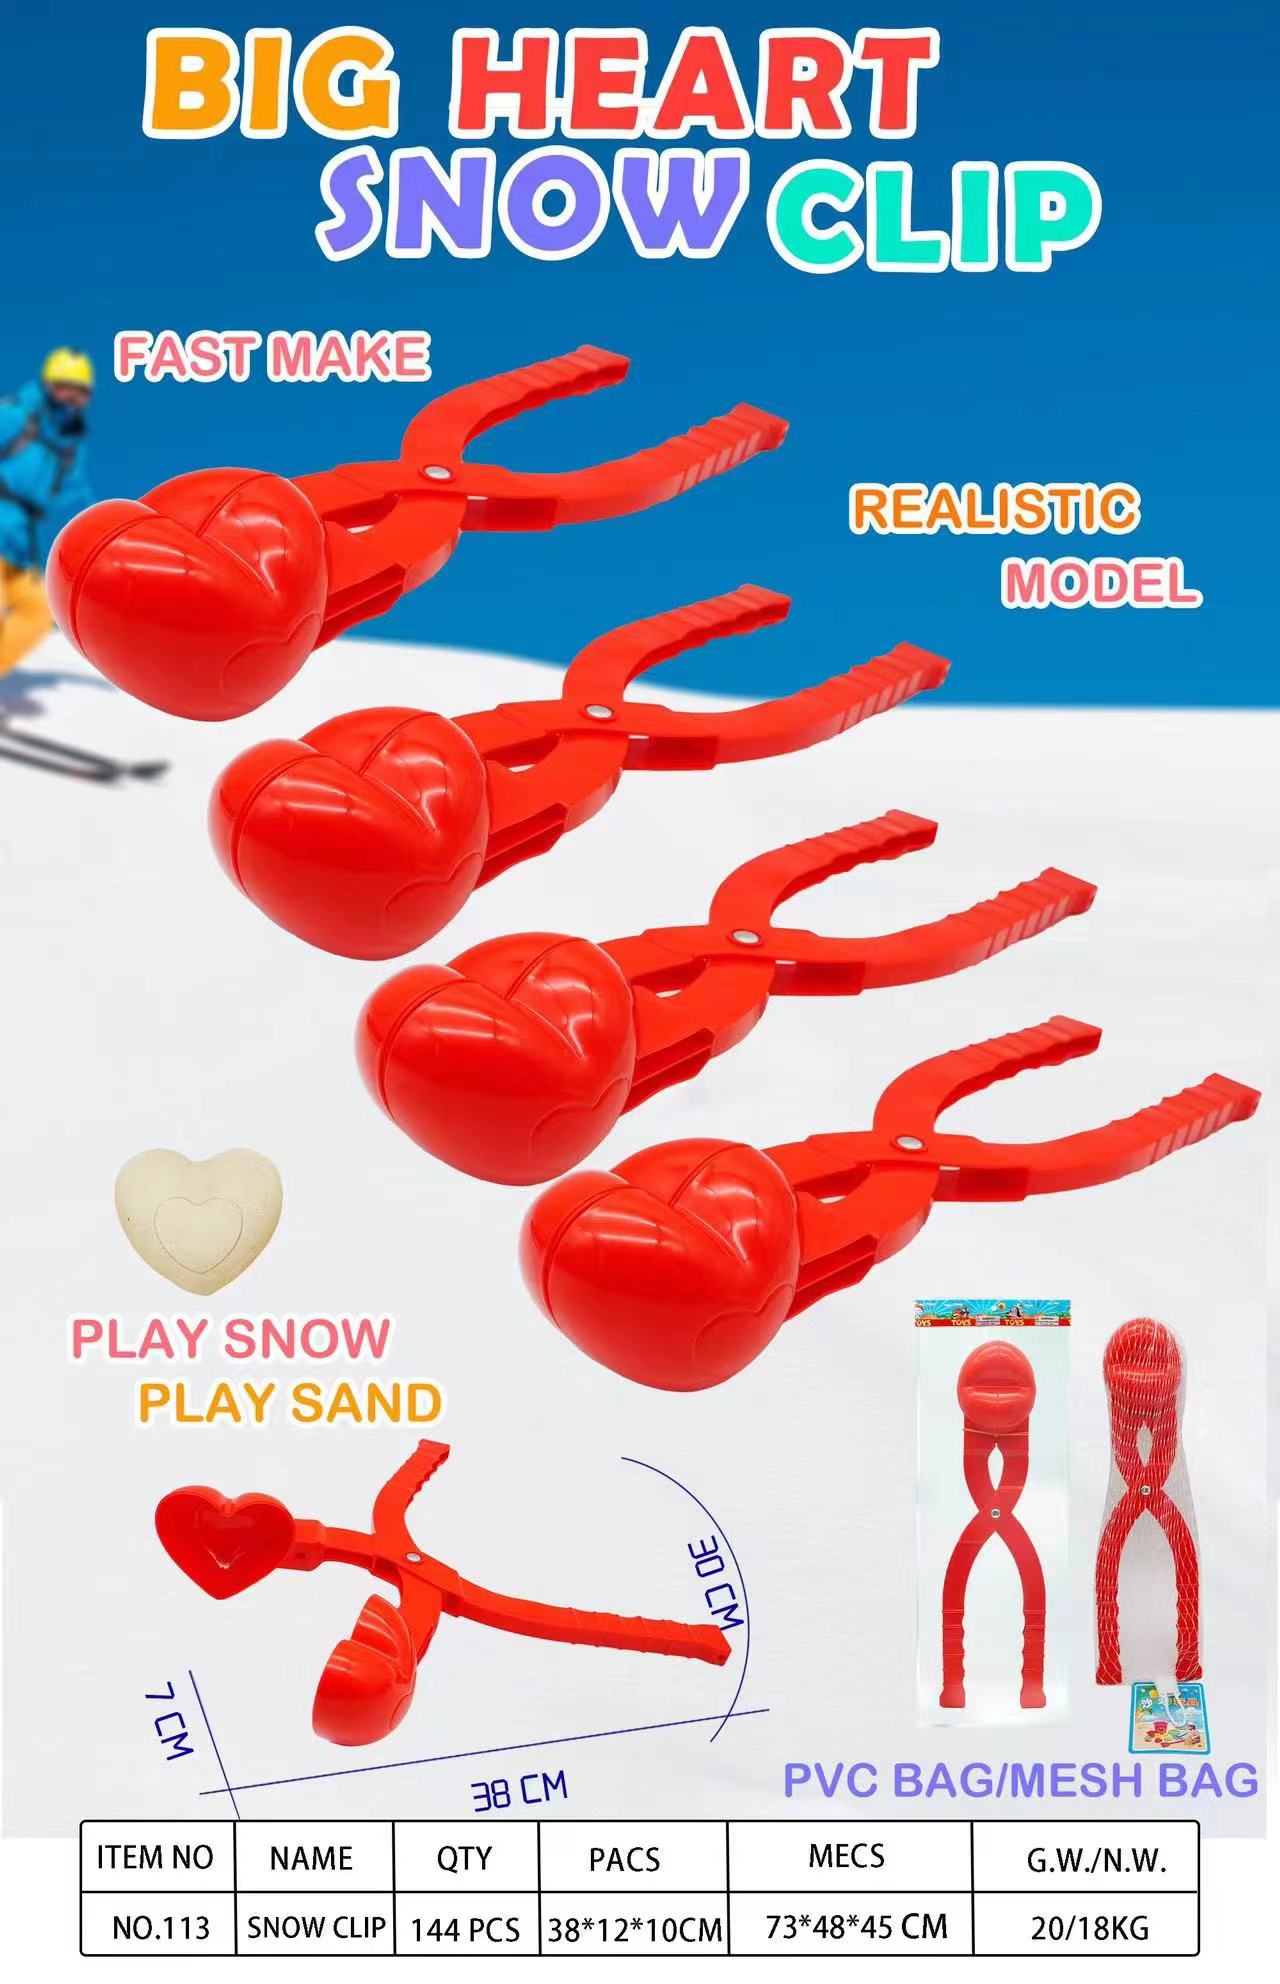 雪球夹/沙滩玩具/模型细节图